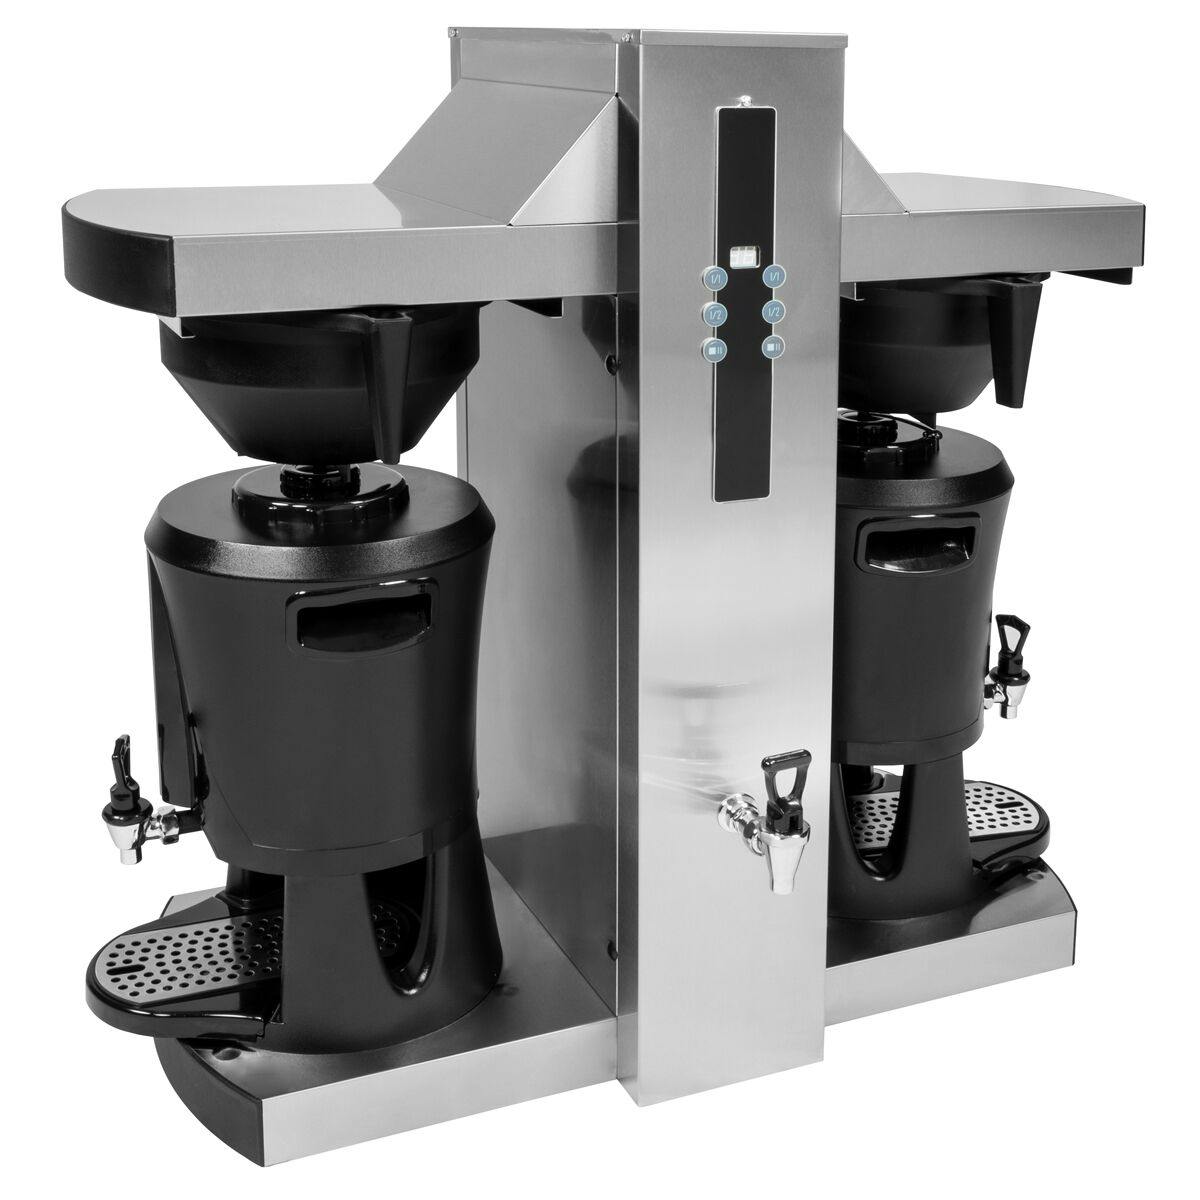 Filtrační kávovar s výdejníkem horké vody - 2x 5L